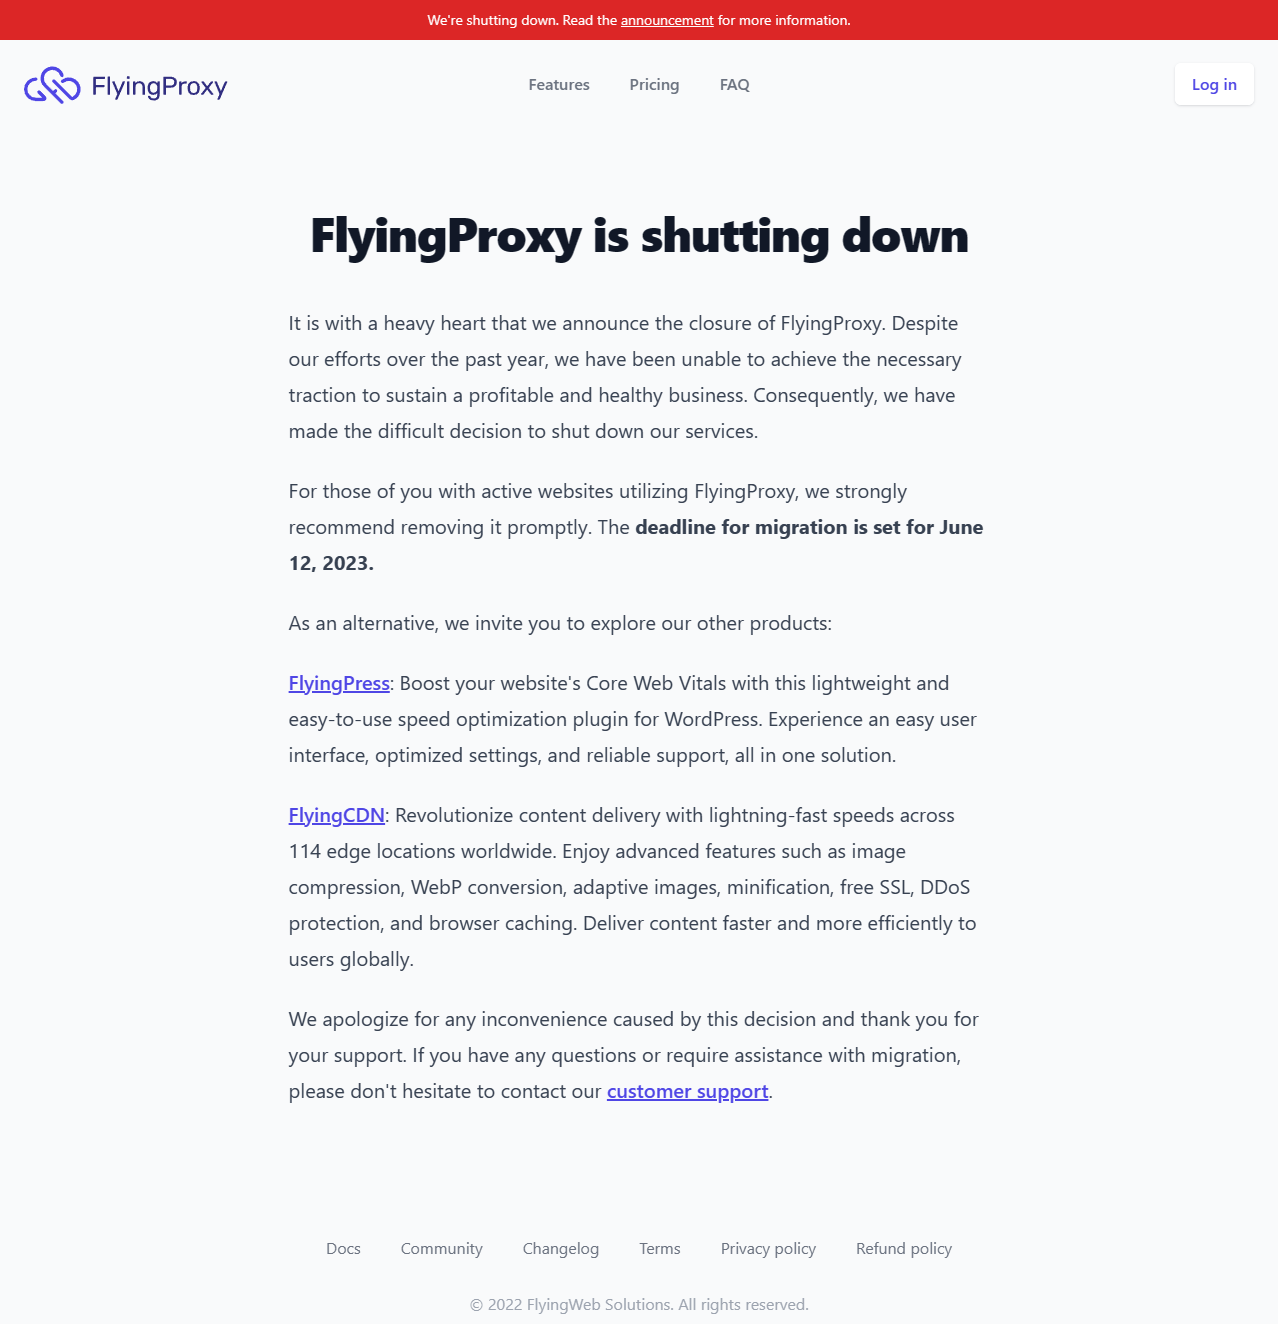 FlyingProxy is shutting down